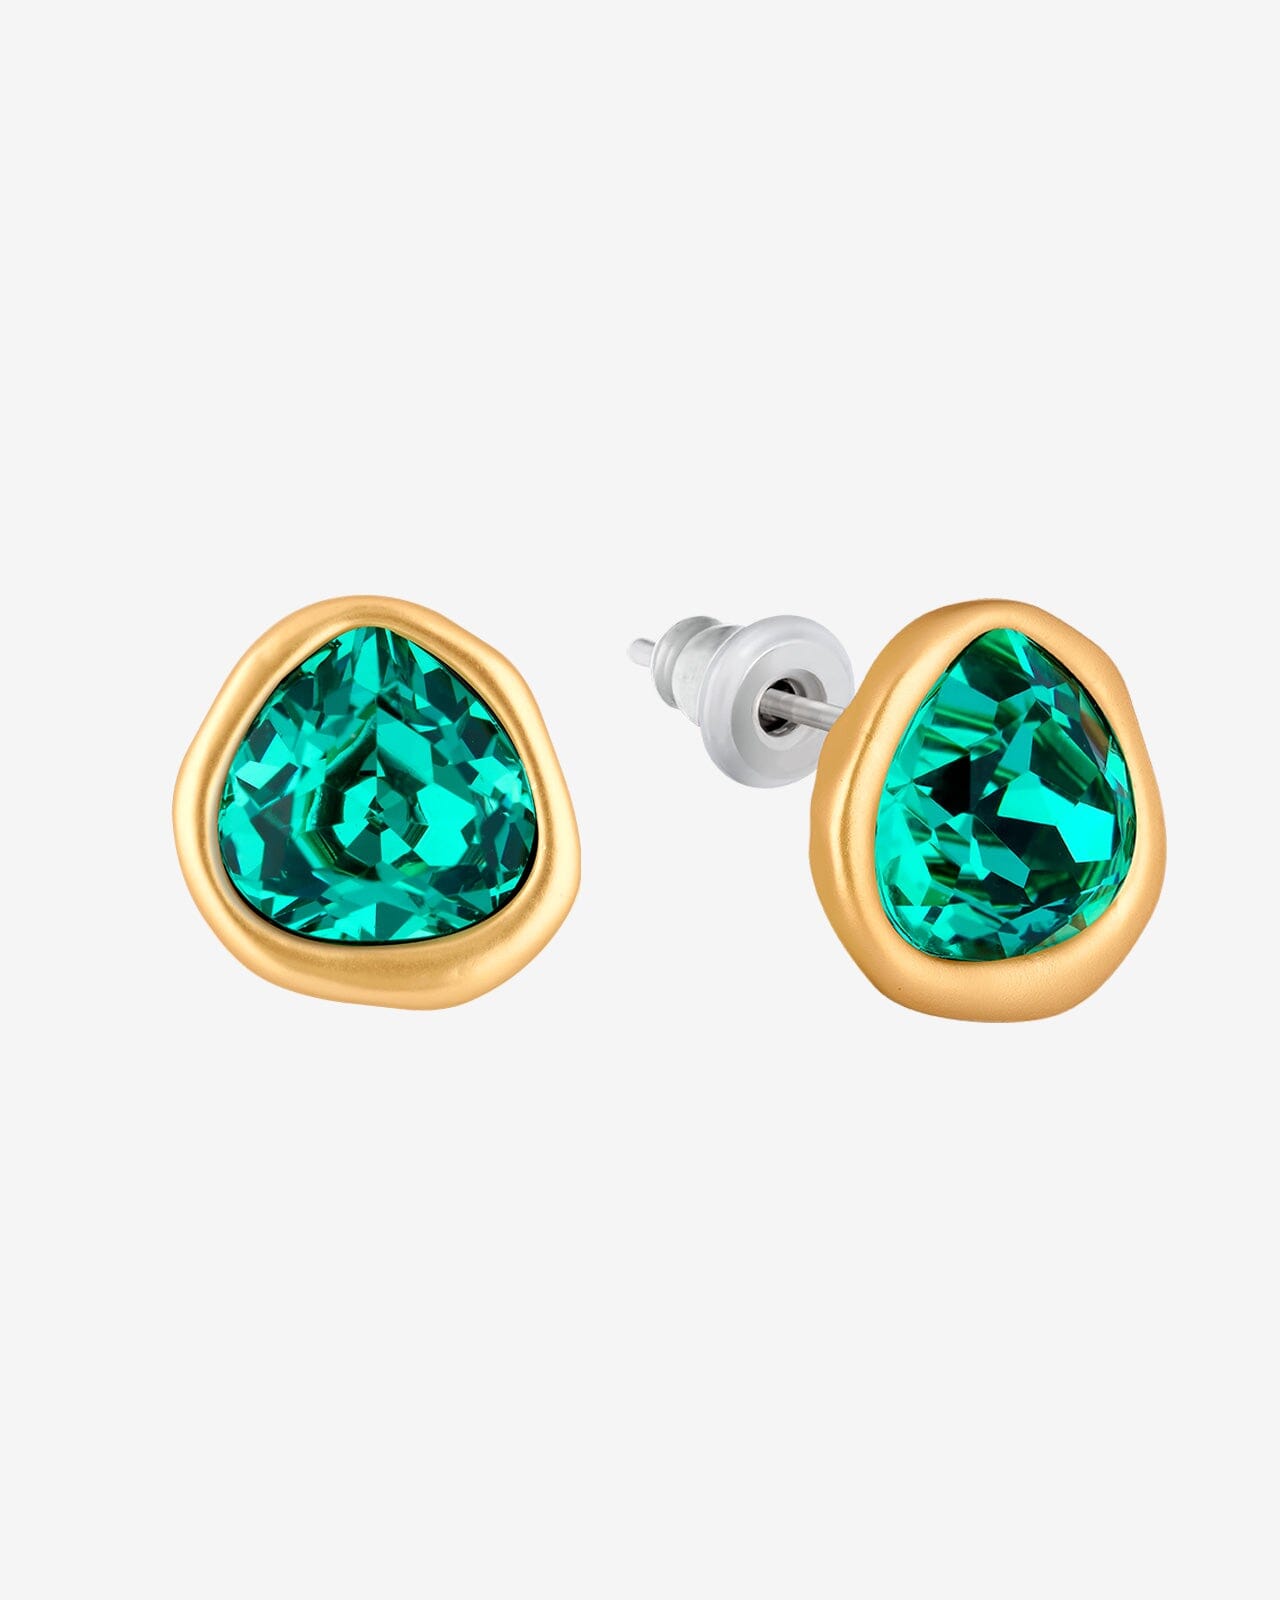 Austrian Crystal Stud Earrings - Vinty Jewelry